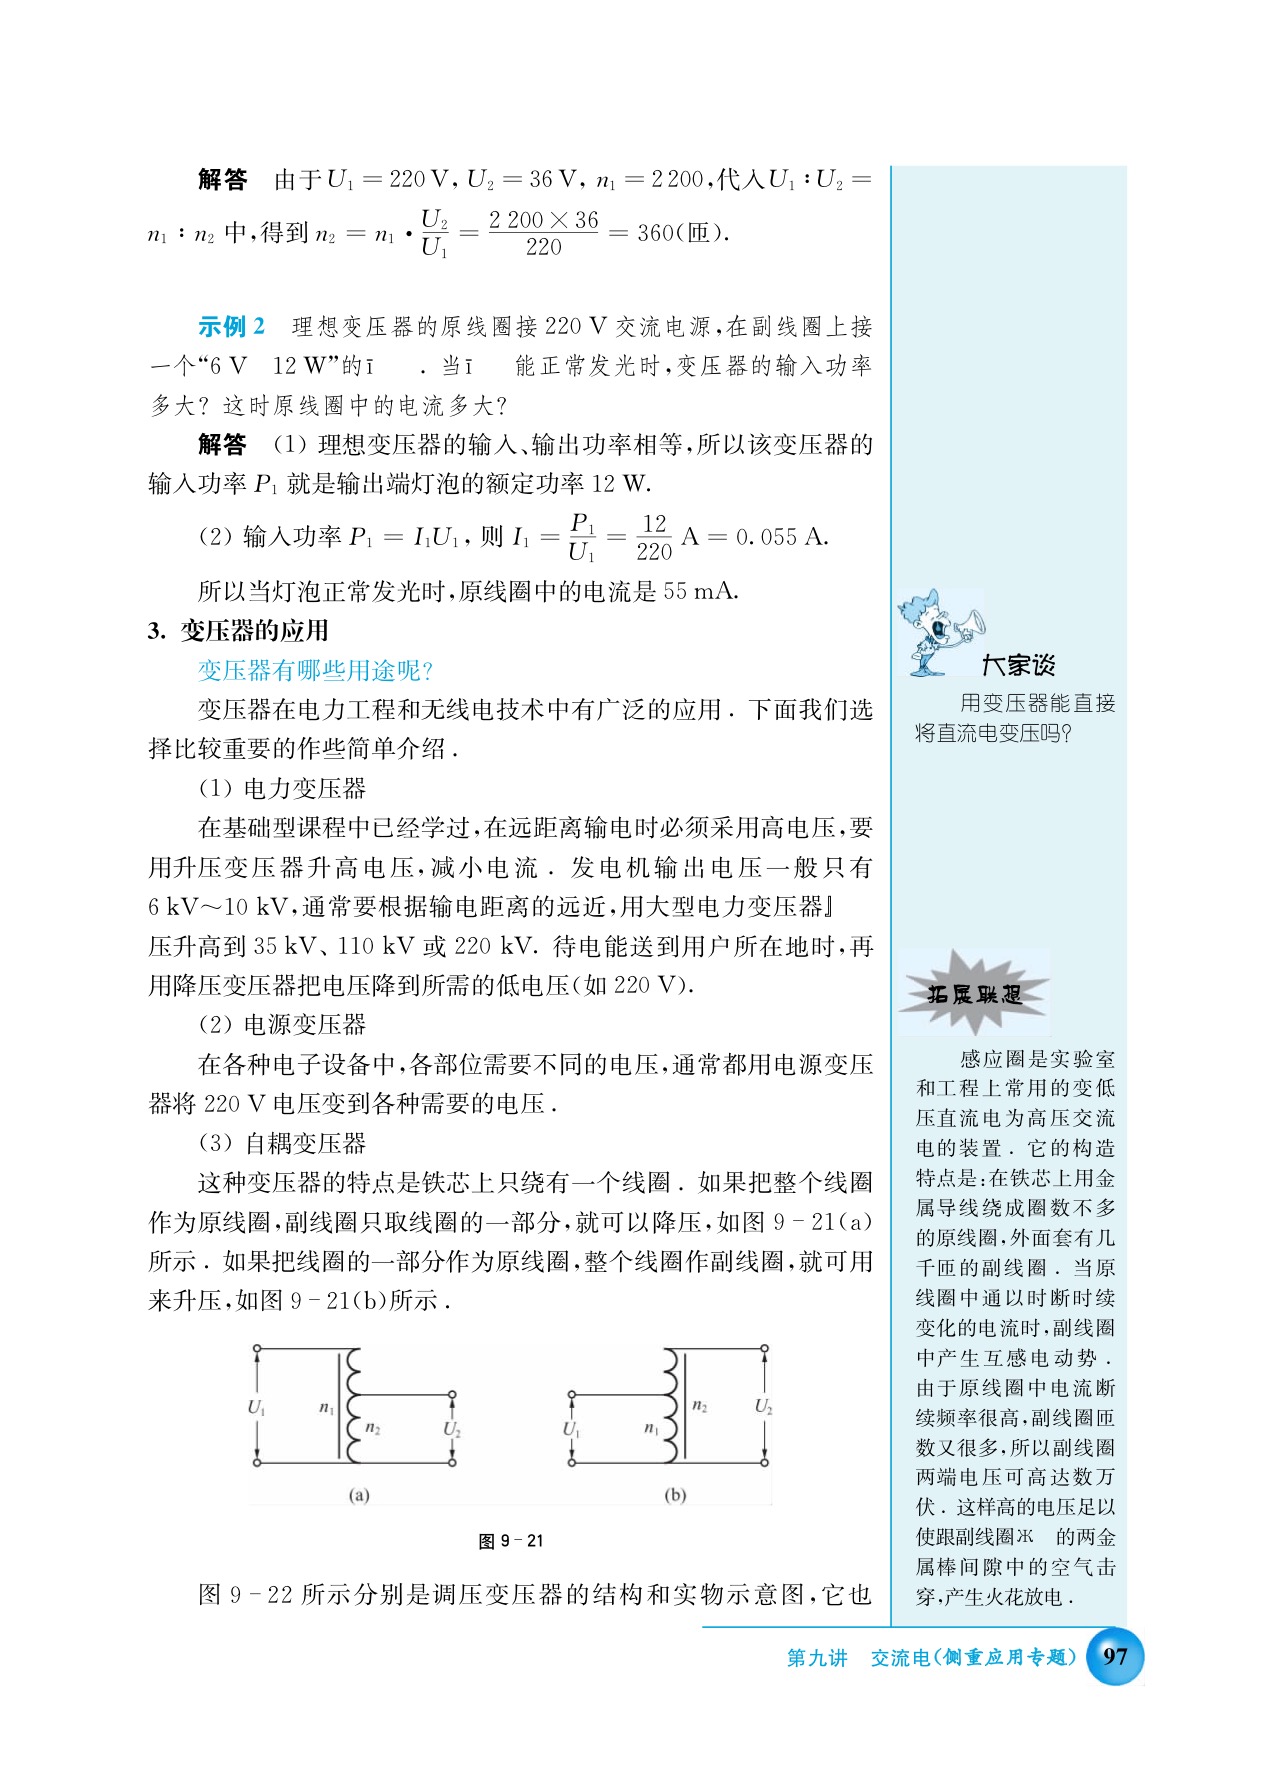 B. 变压器高压输电(3)